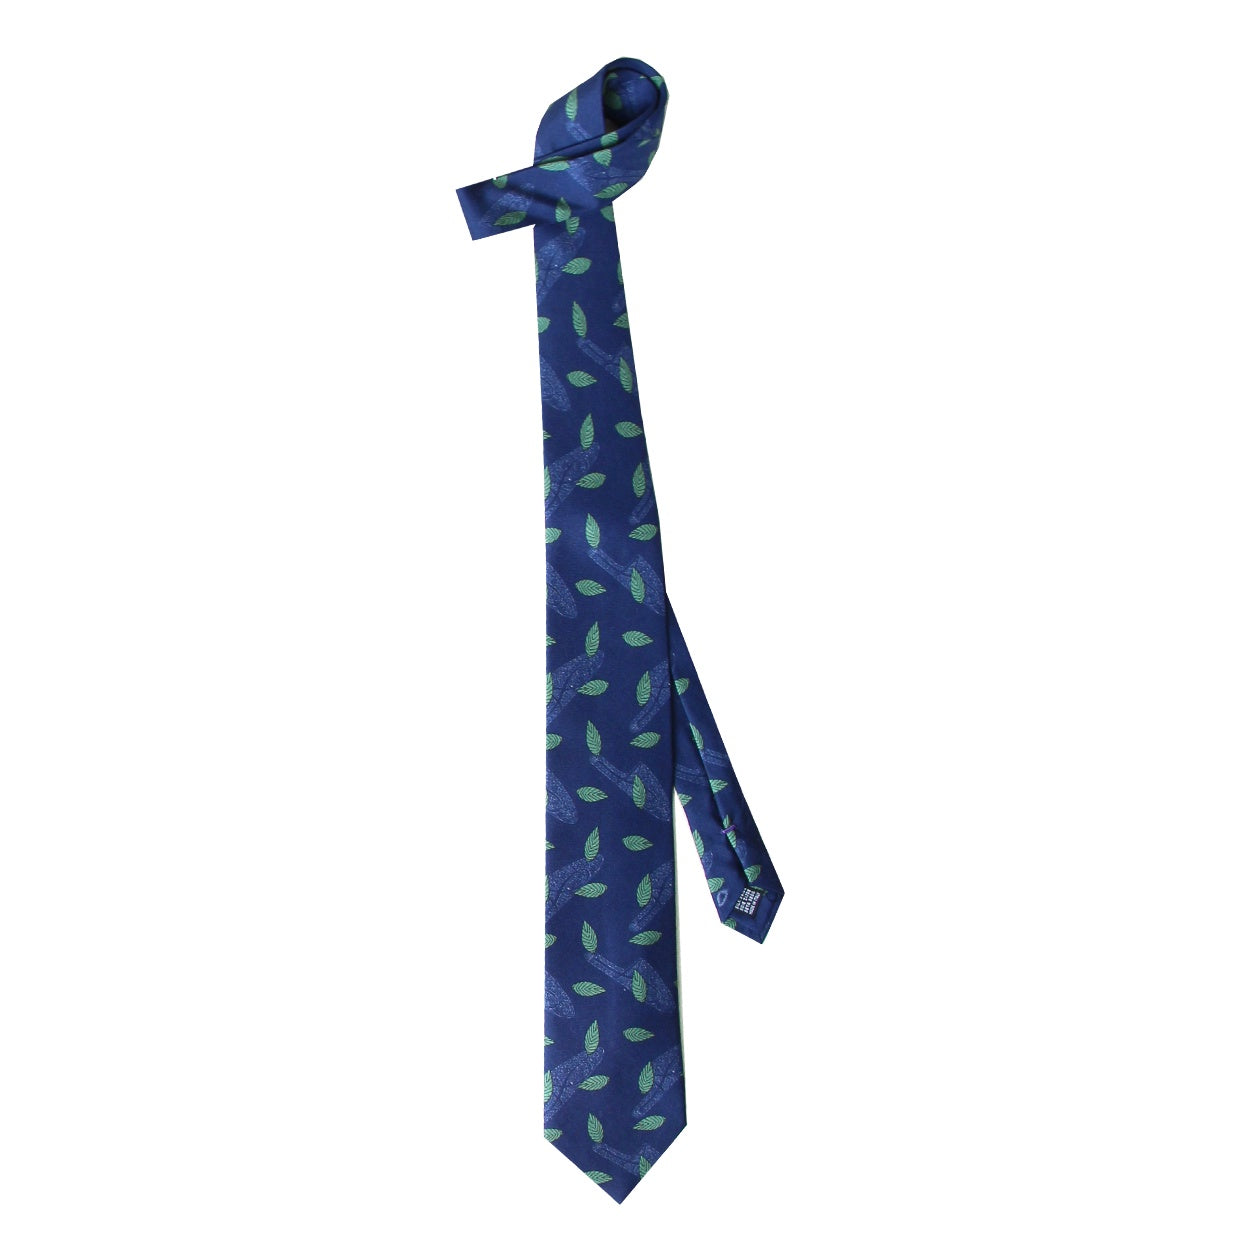 Cravate Parure madder imprimé Platines et feuilles - Marine motif mousse grège